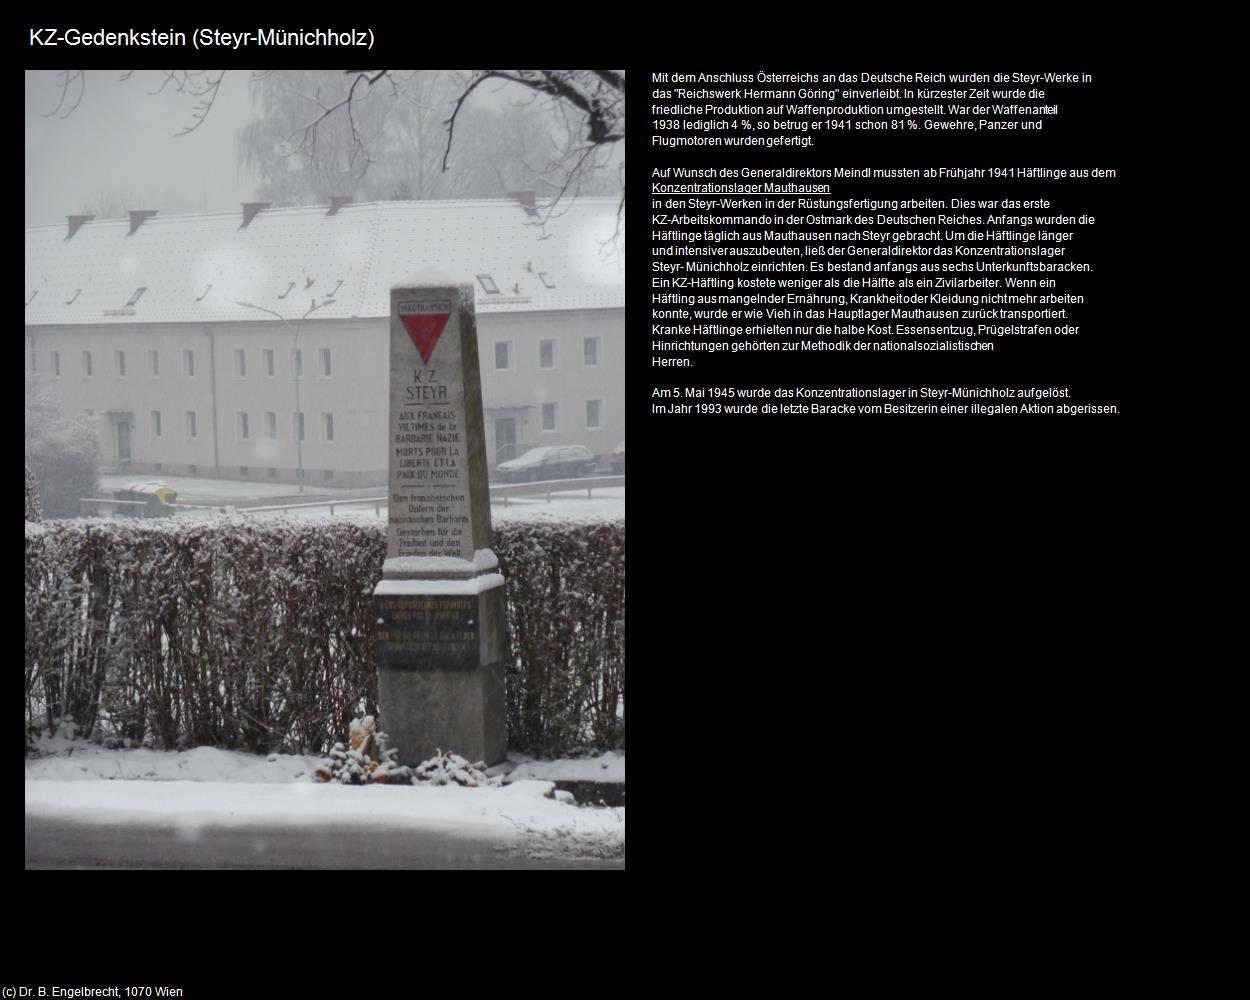 KZ-Gedenkstein (Münichholz) (Steyr) in Kulturatlas-OBERÖSTERREICH(c)B.Engelbrecht